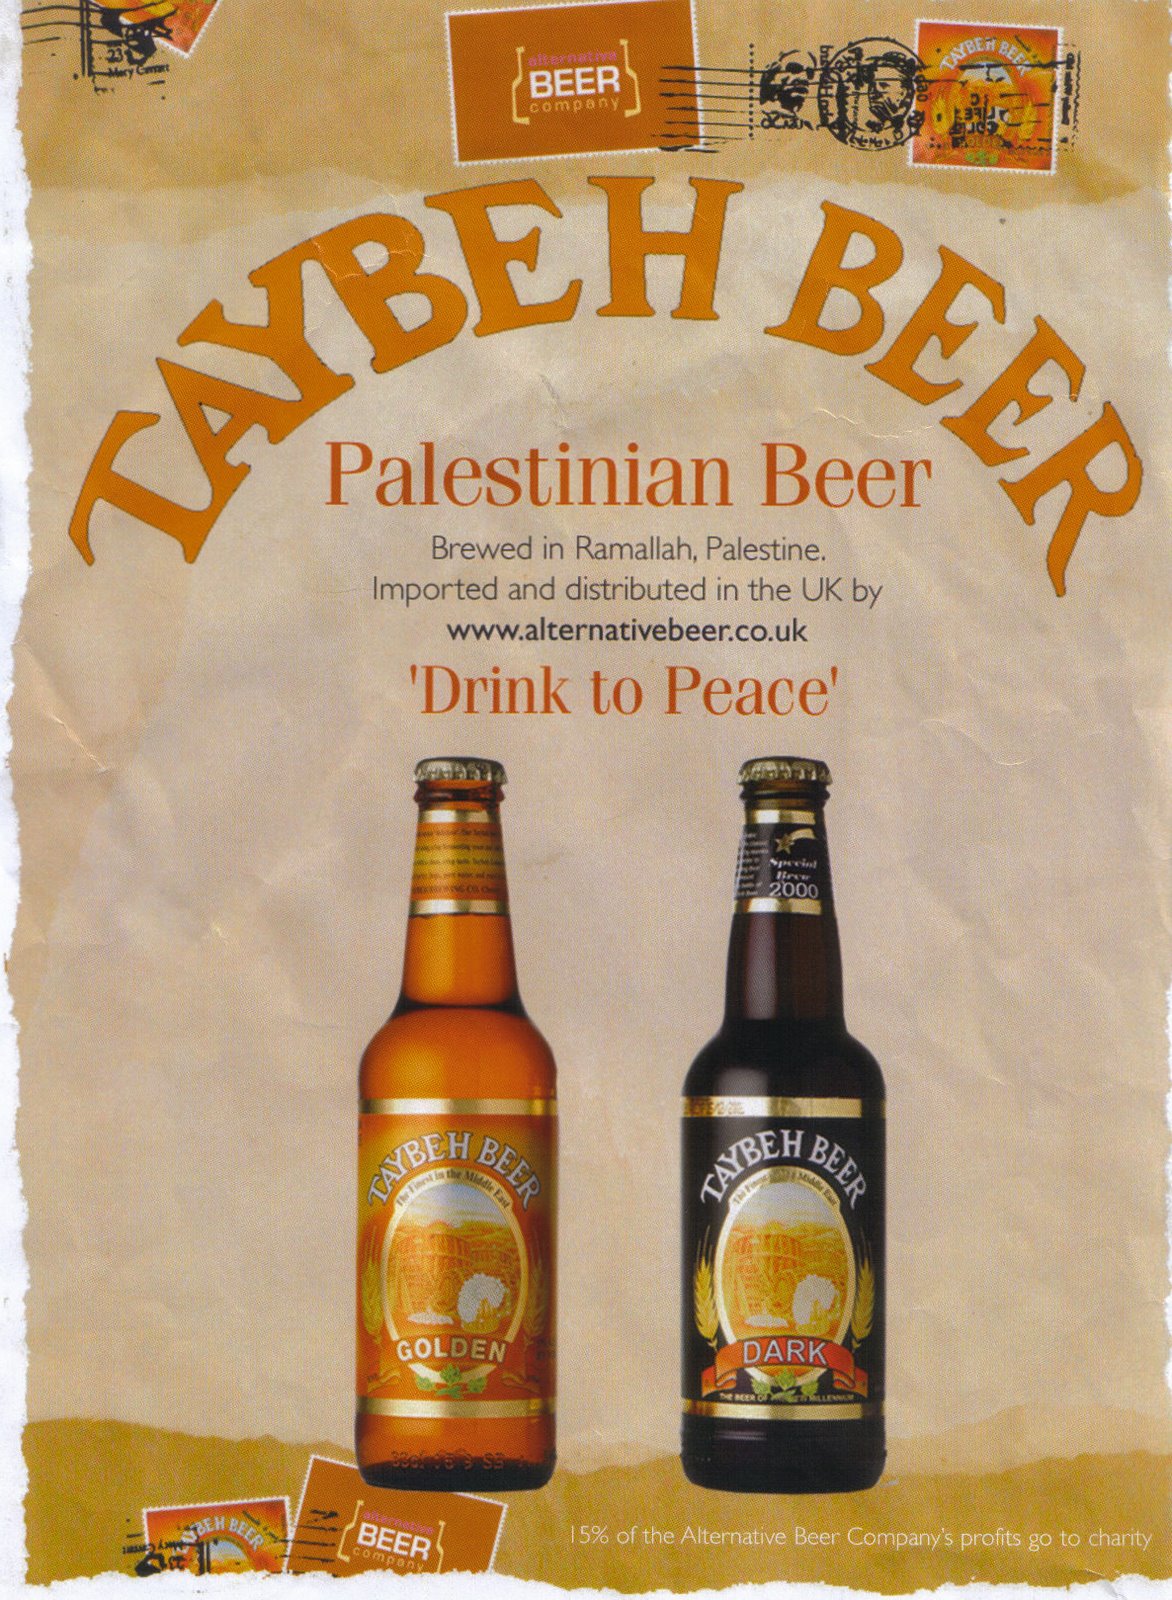 taybeh-beer.jpg